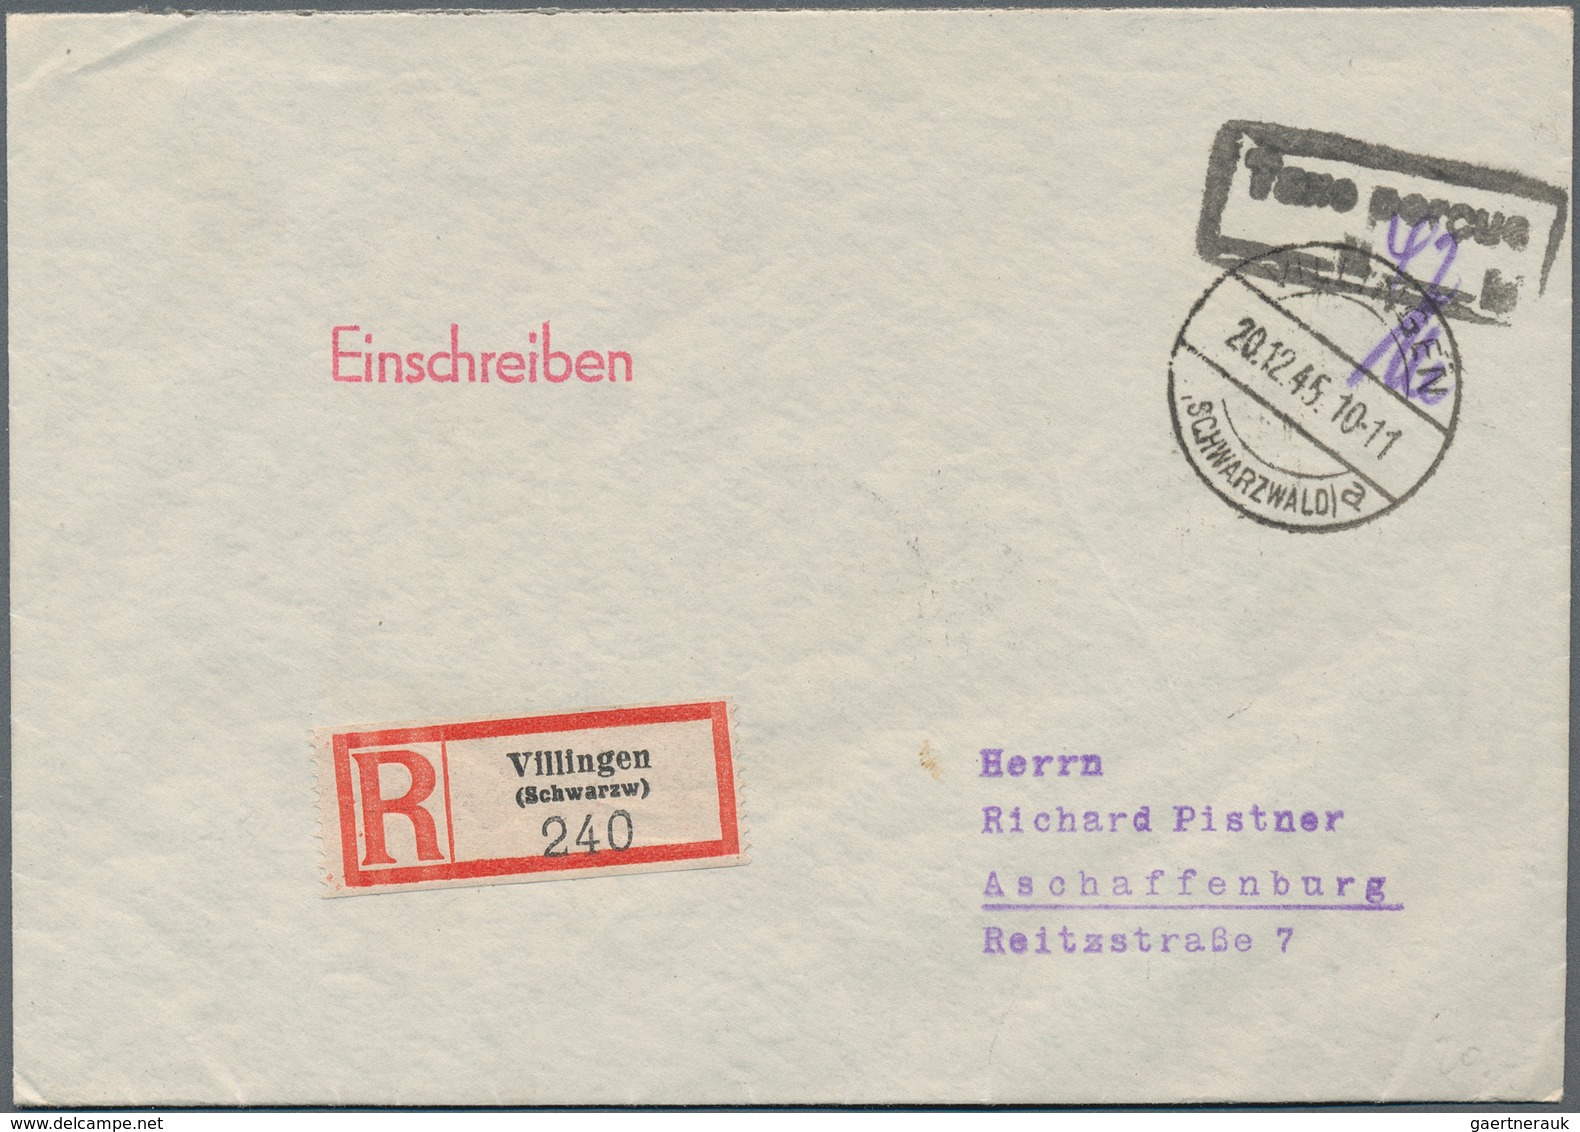 Alliierte Besetzung - Gebühr Bezahlt: 1945-1950, Partie mit über 700 Briefen und Belegen mit "Gebühr